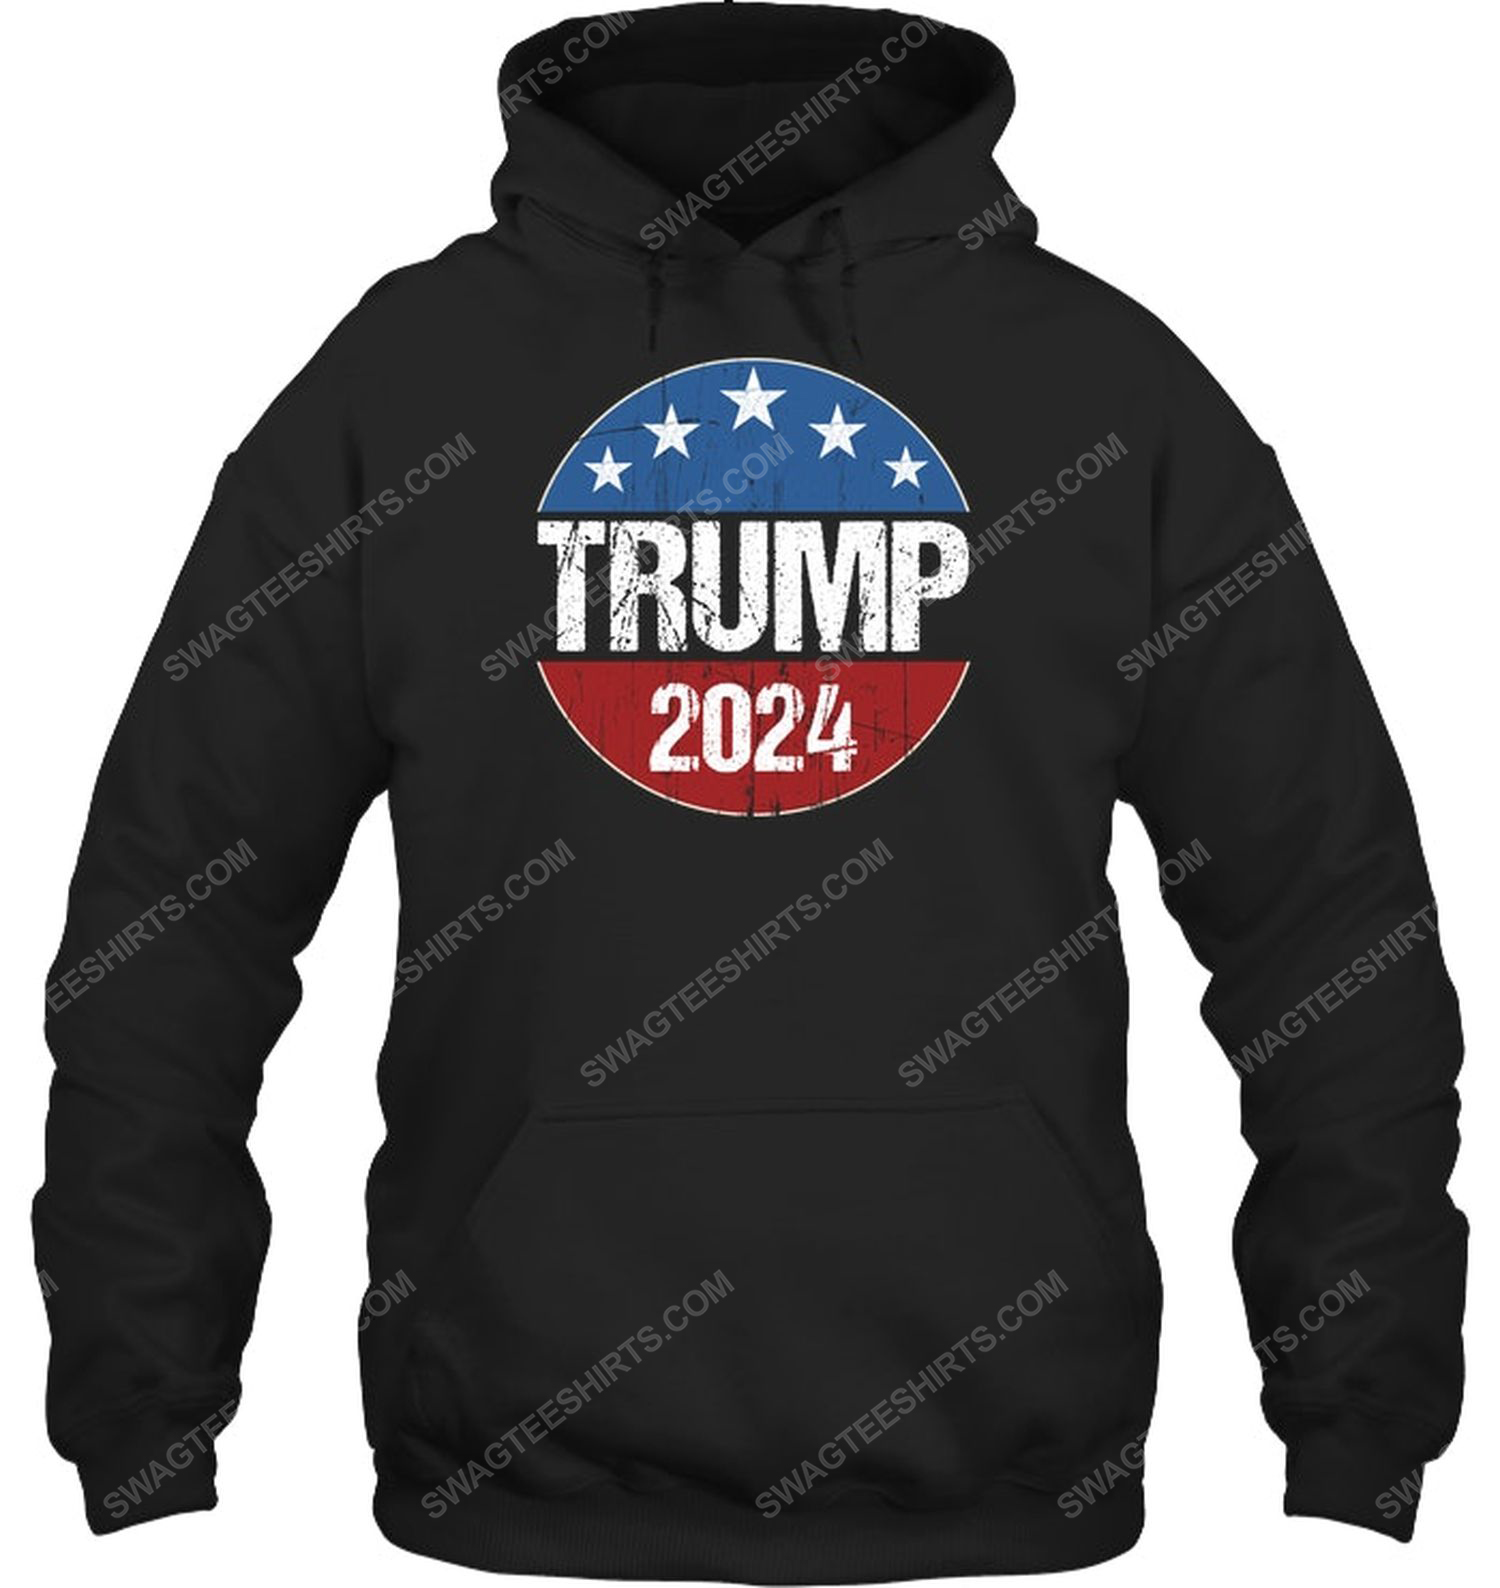 Trump 2024 american flag political hoodie